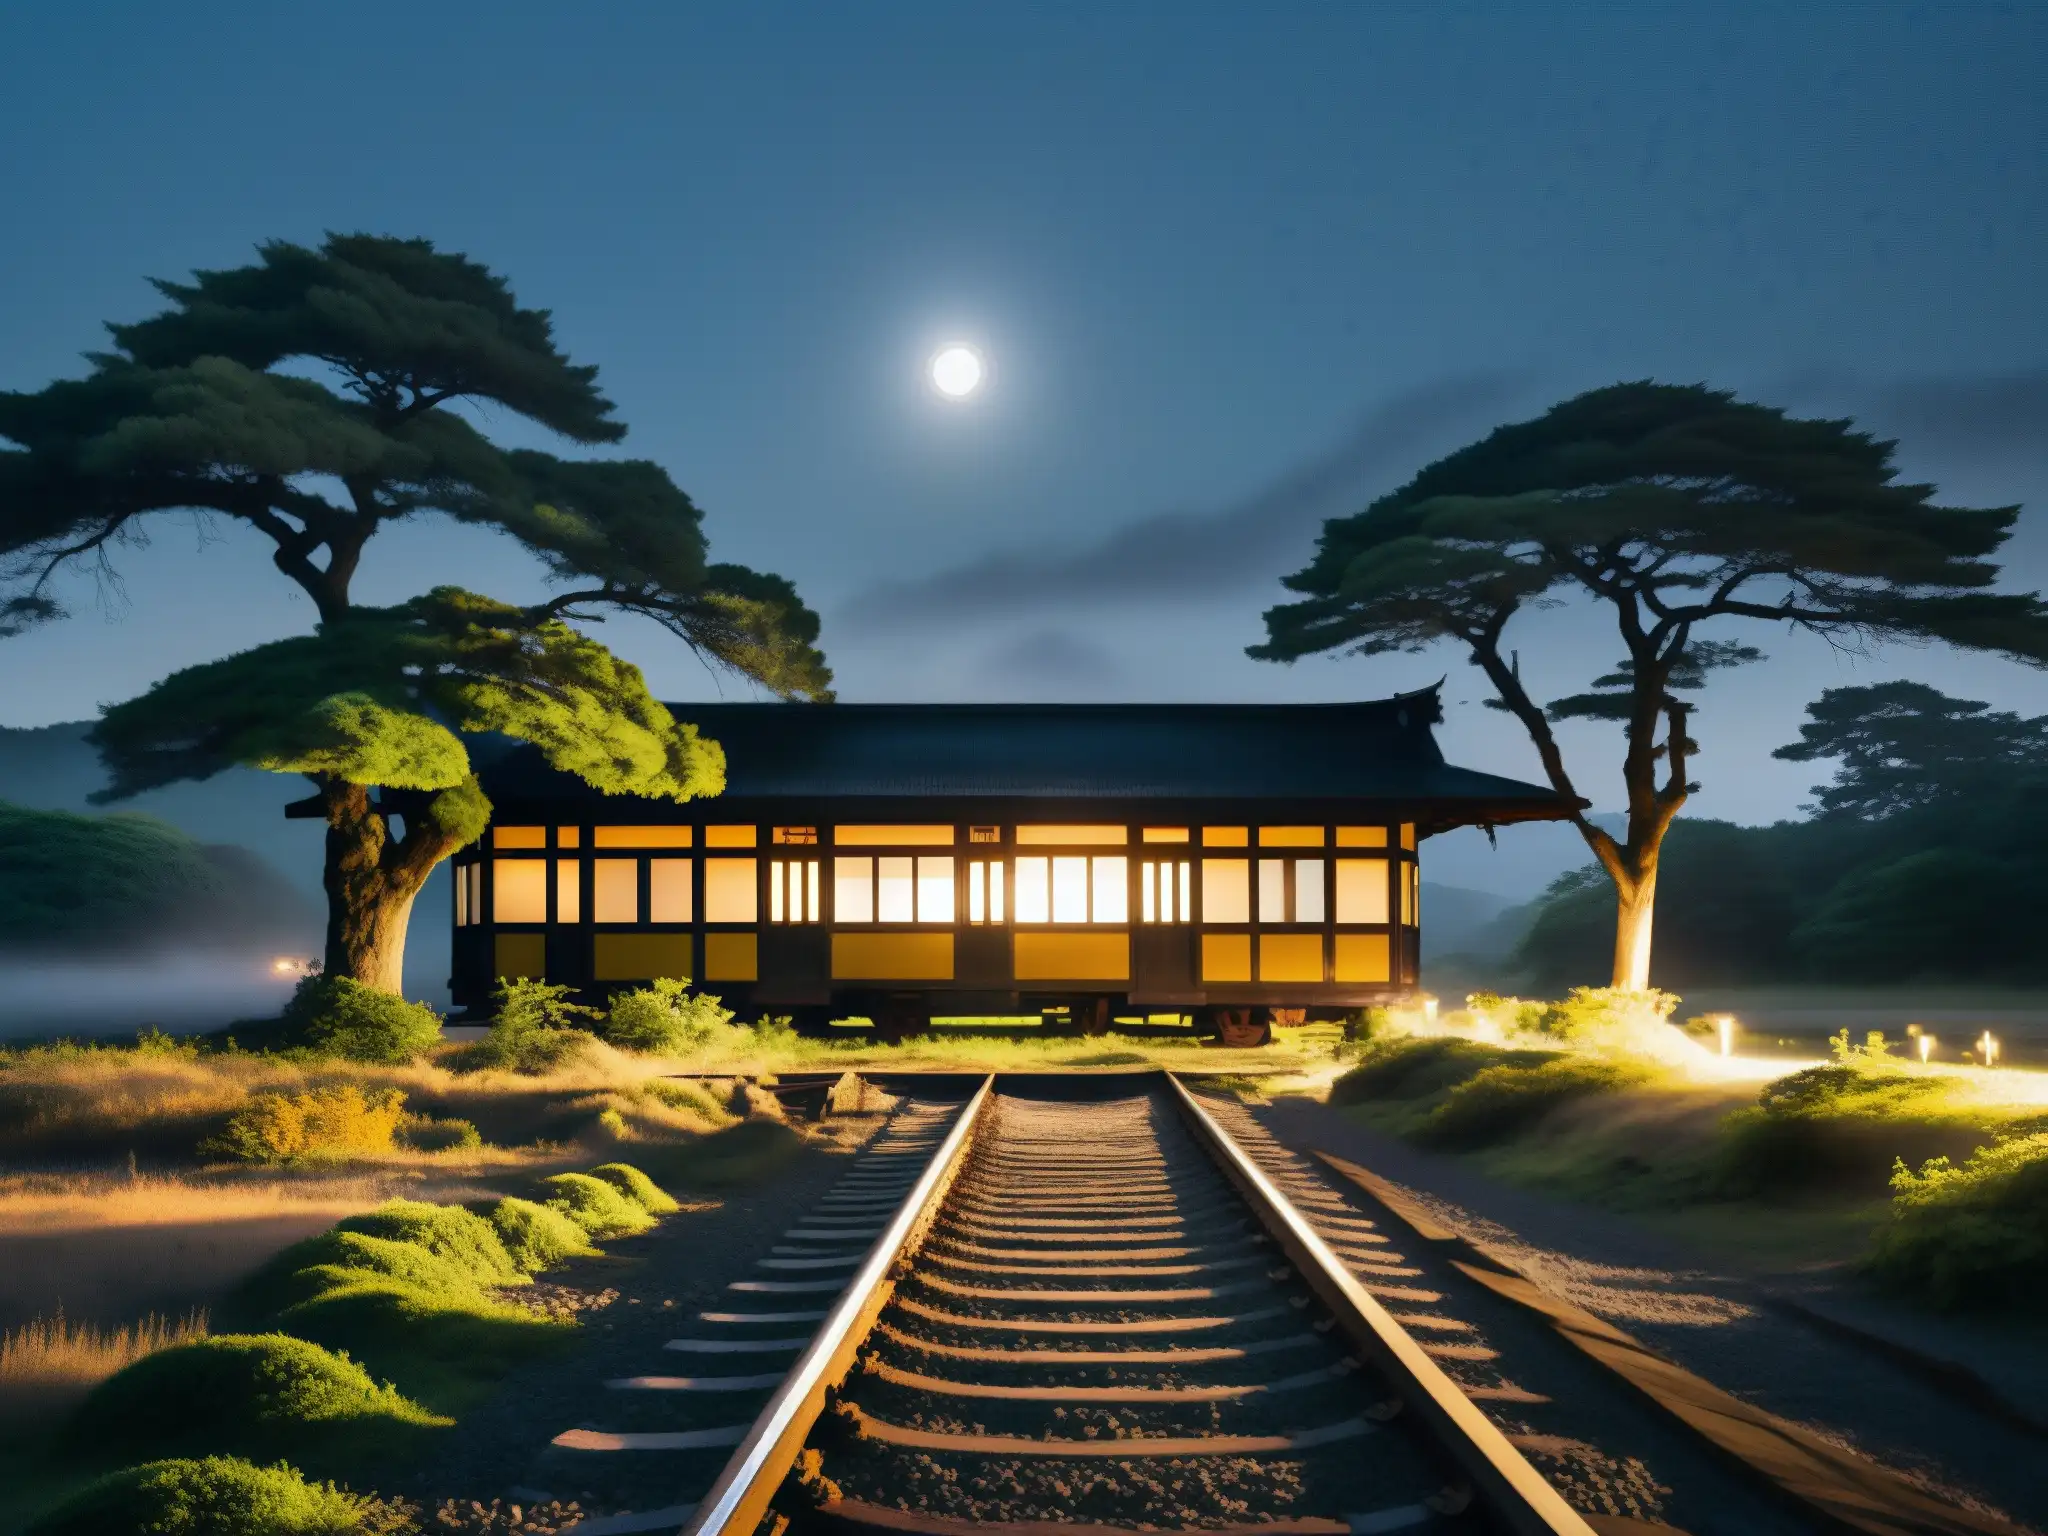 Tren fantasma en la estación abandonada de Japón, con vías cubiertas por la niebla y árboles antiguos